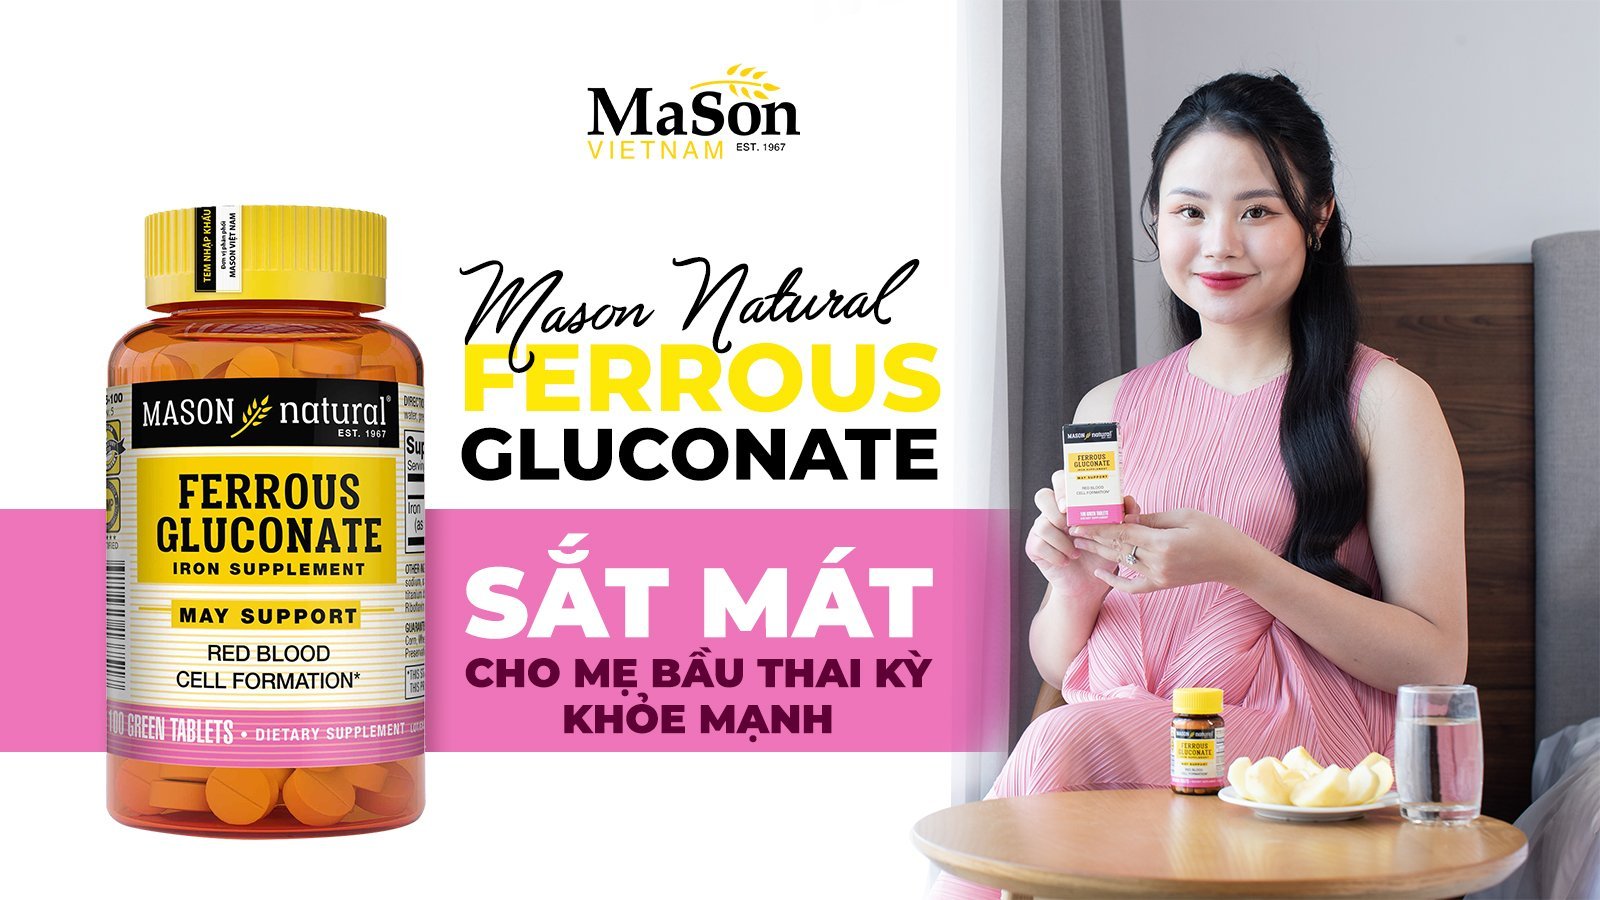  Mason Natural Ferrous Gluconate – Sự lựa chọn hàng đầu dành cho mẹ bầu